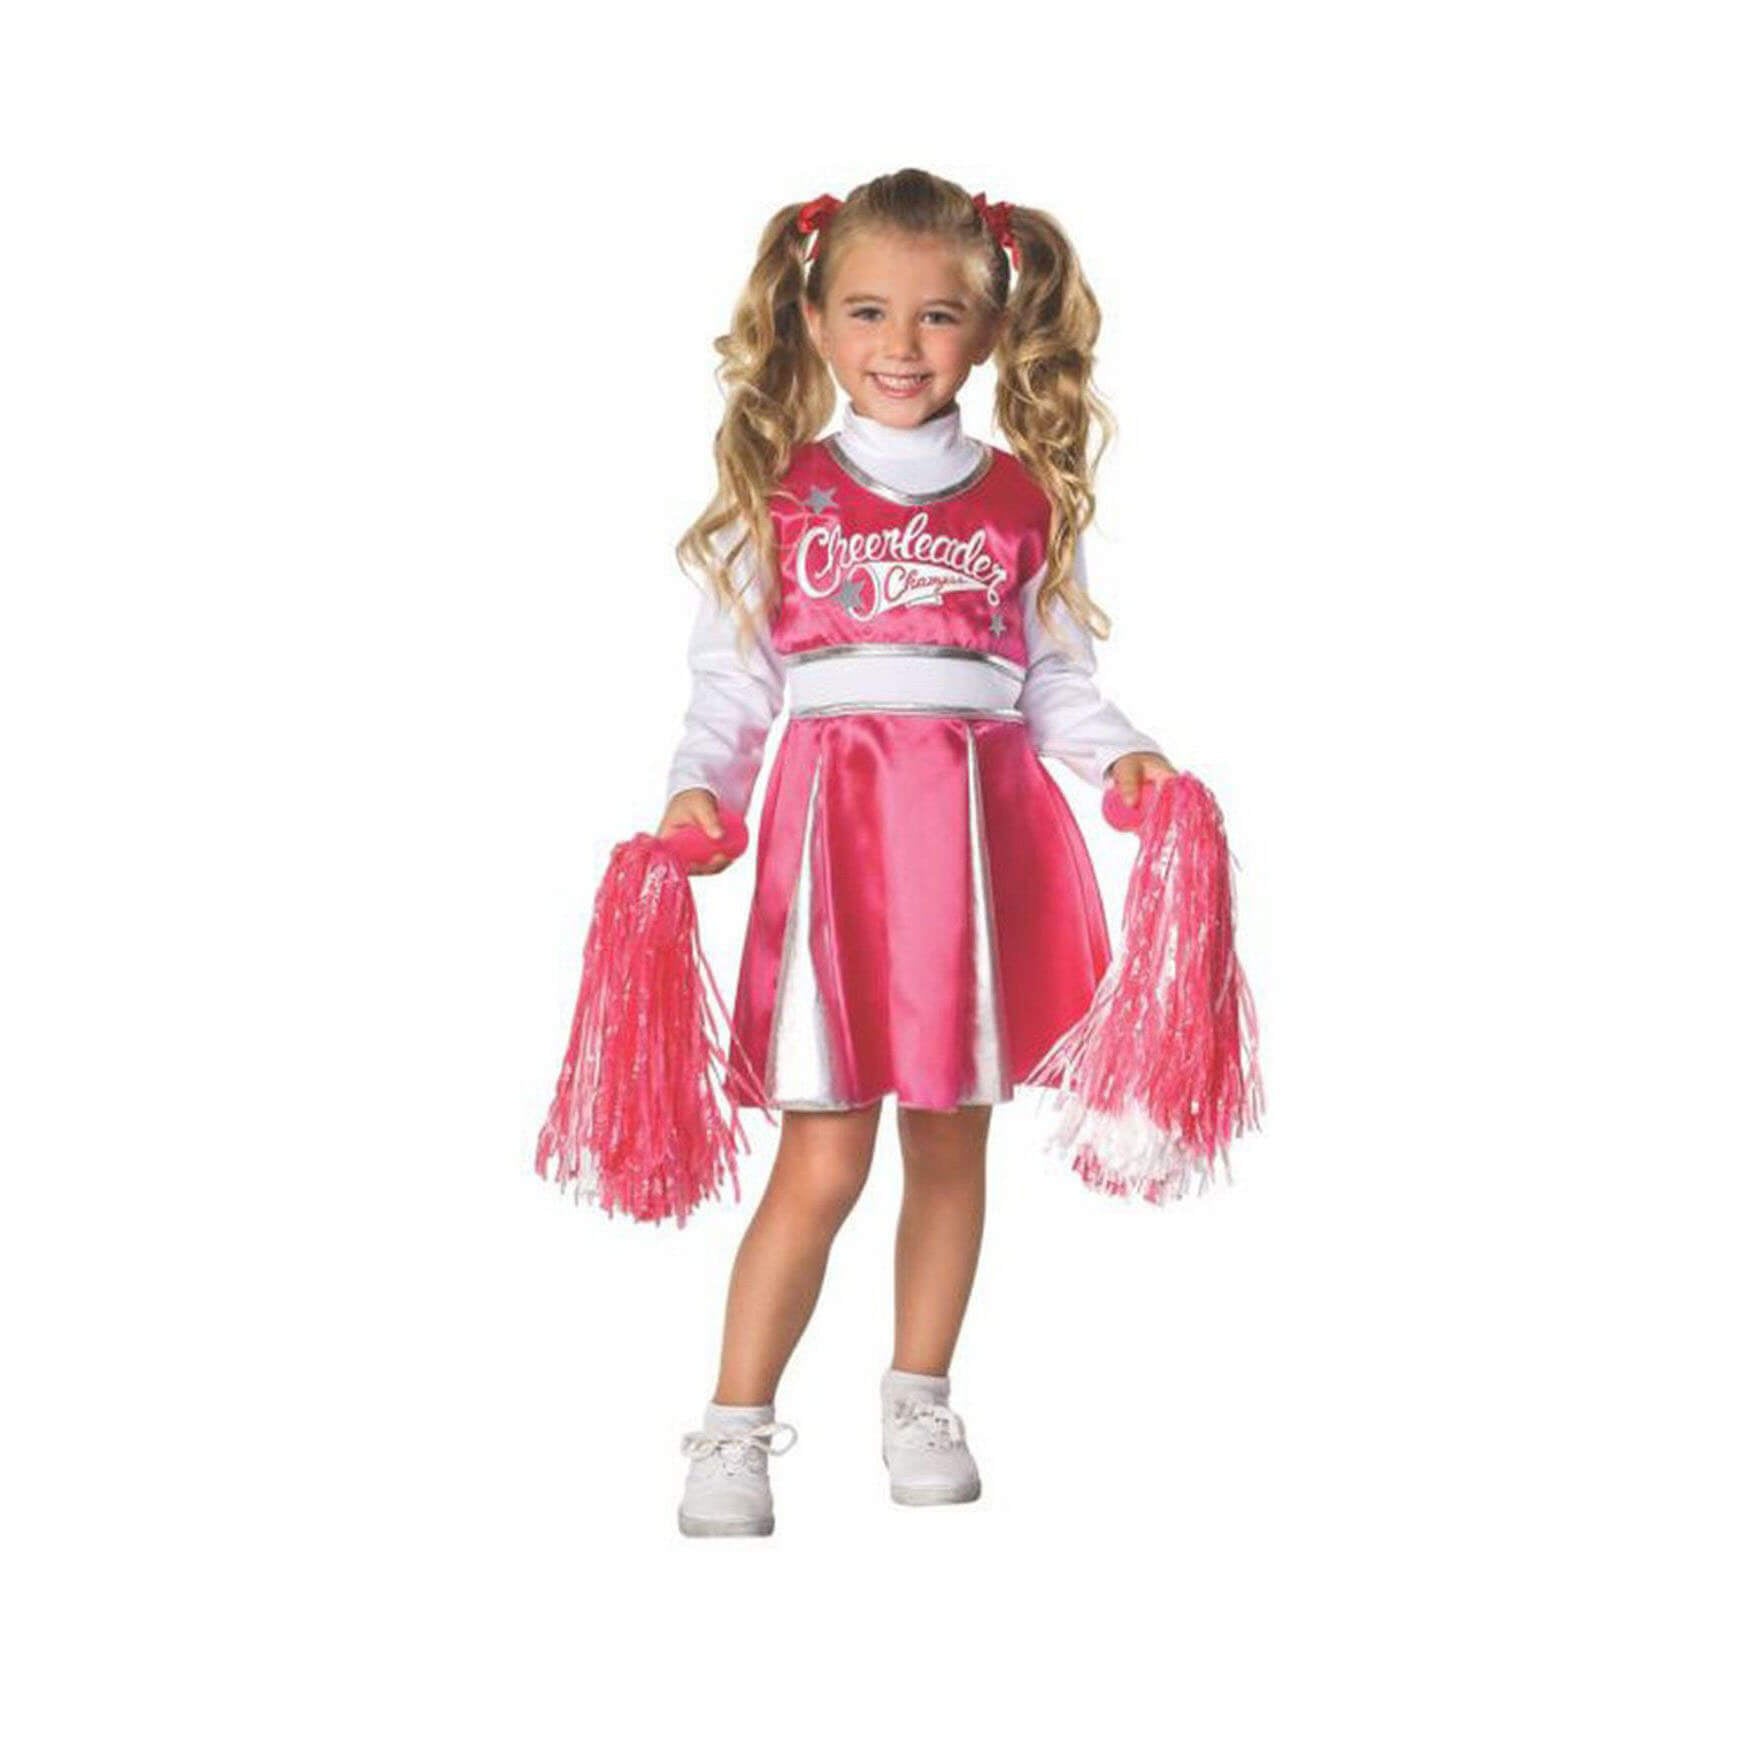 Rubies Cheerleader Champ Toddler Costume